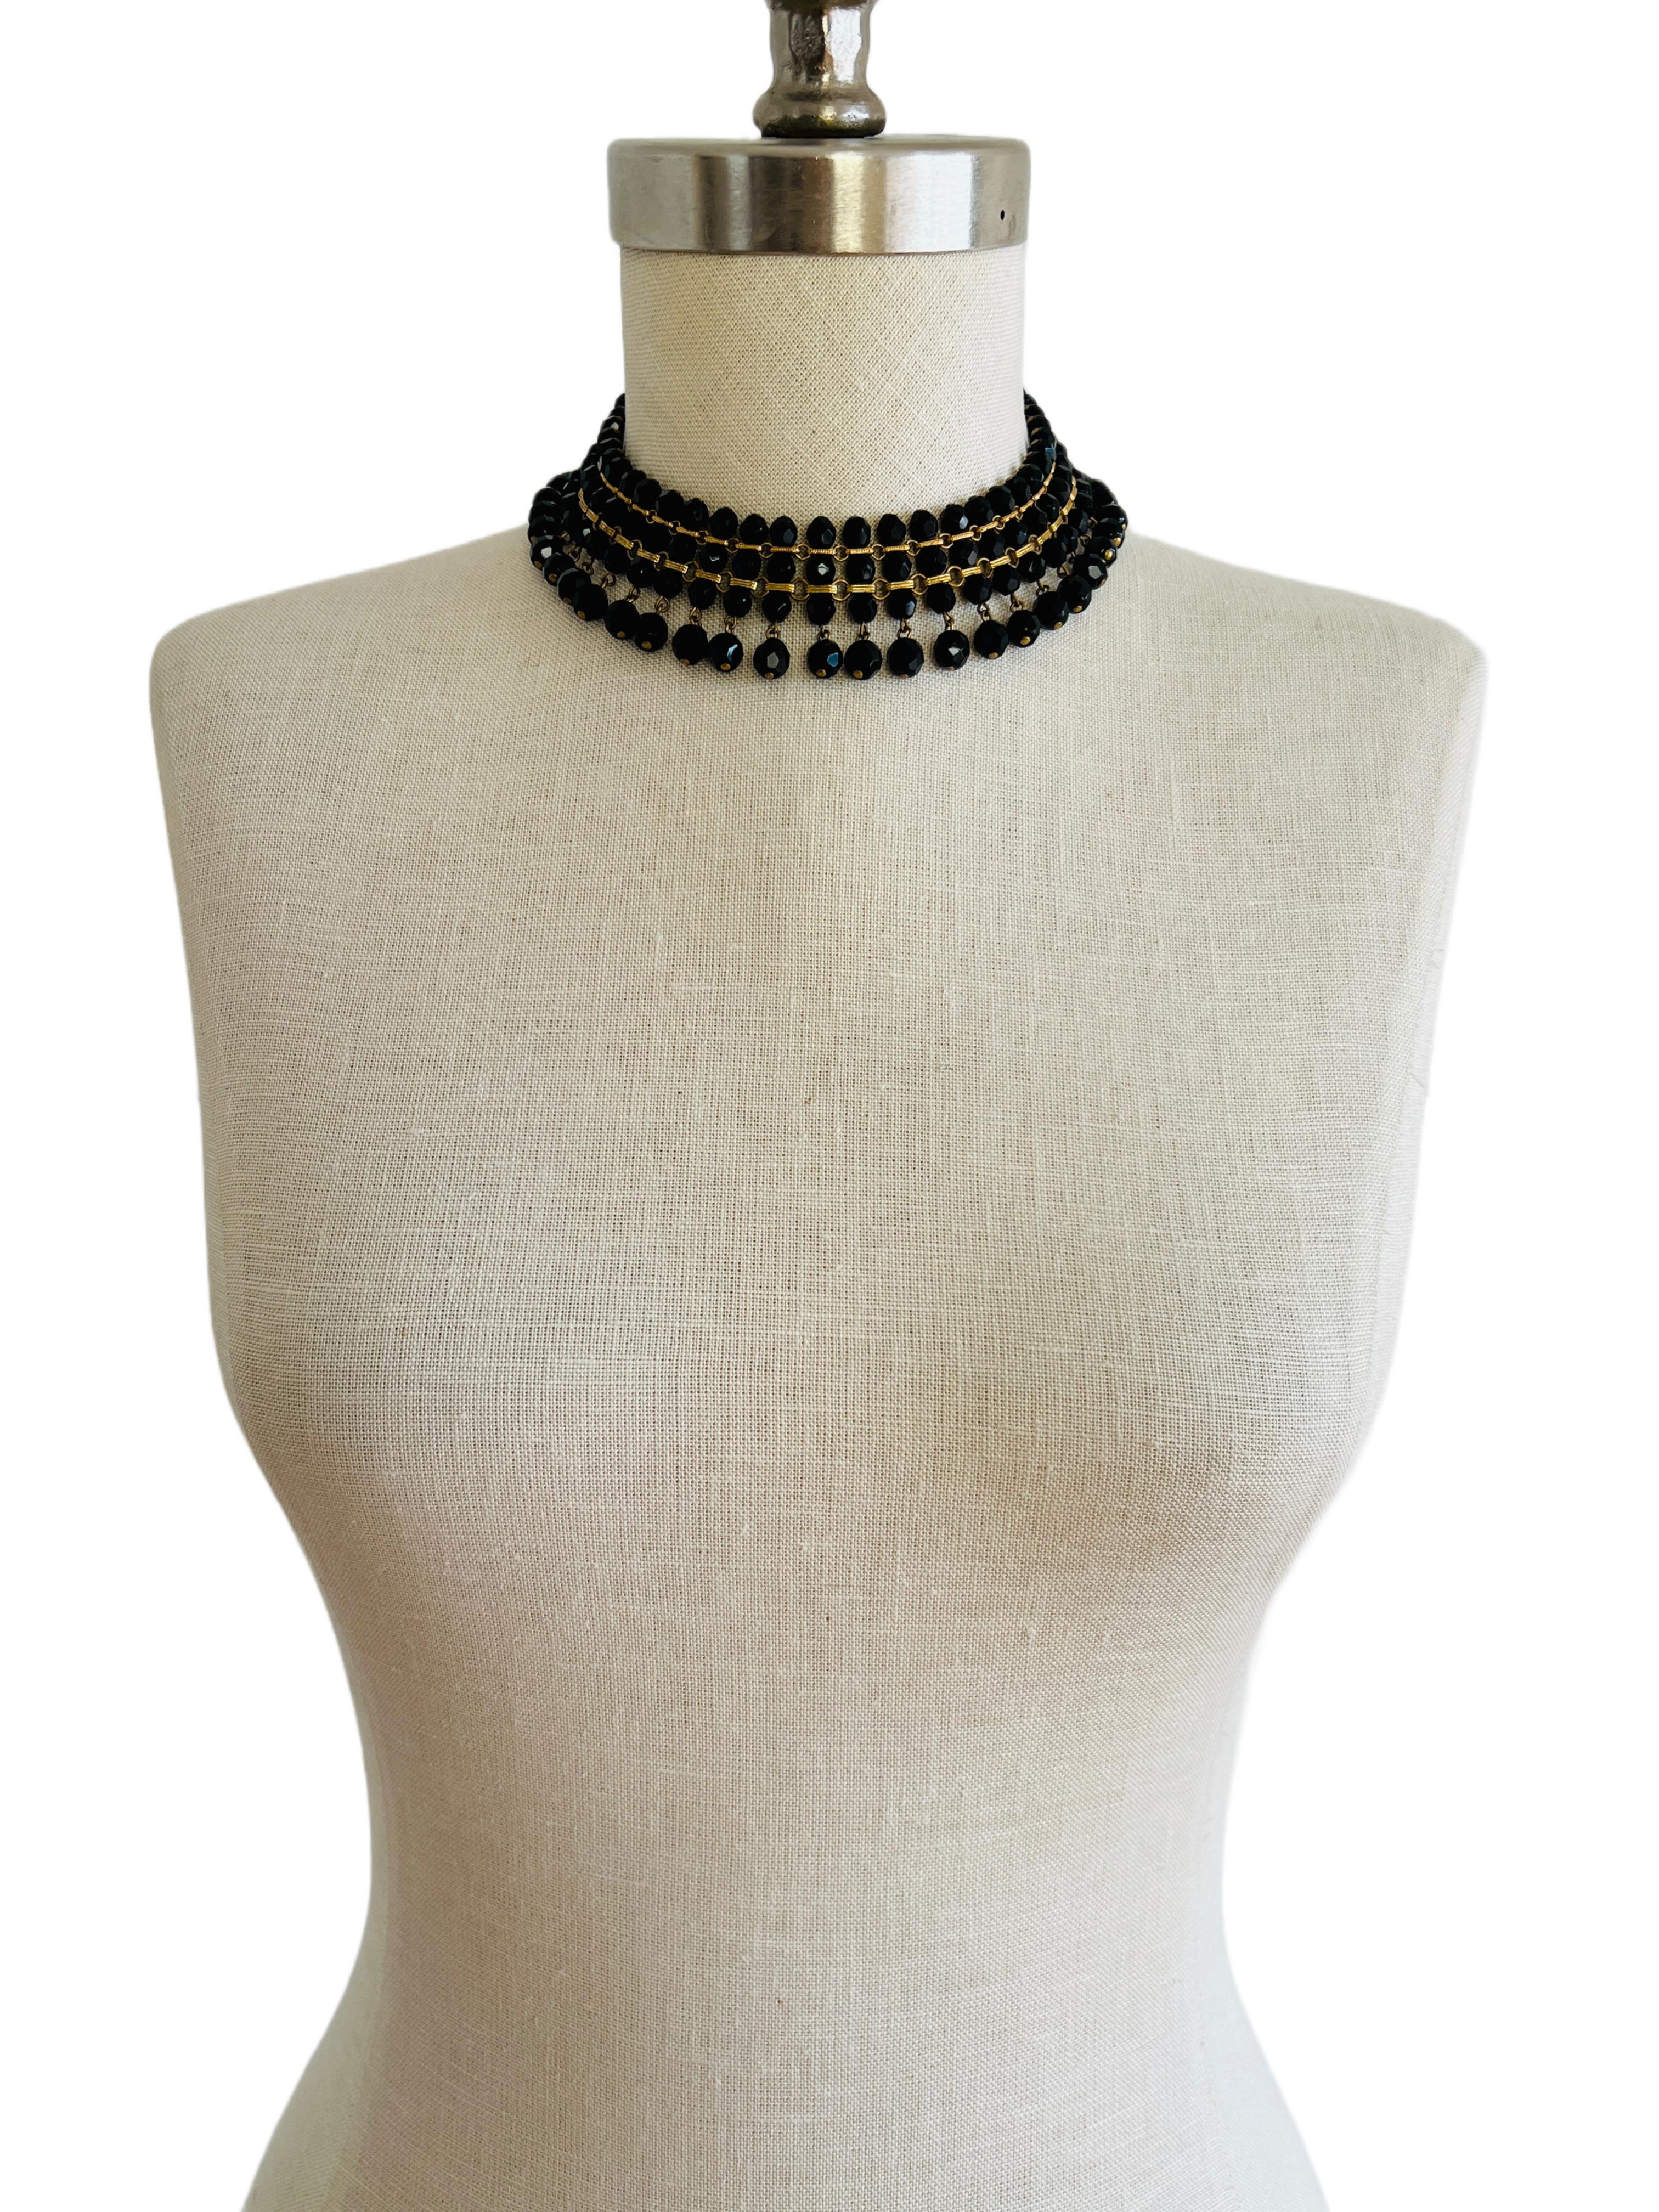 Diese elegante schwarze Halskette ist gut verarbeitet und legt sich schön um den Hals.

Größe: 16,5